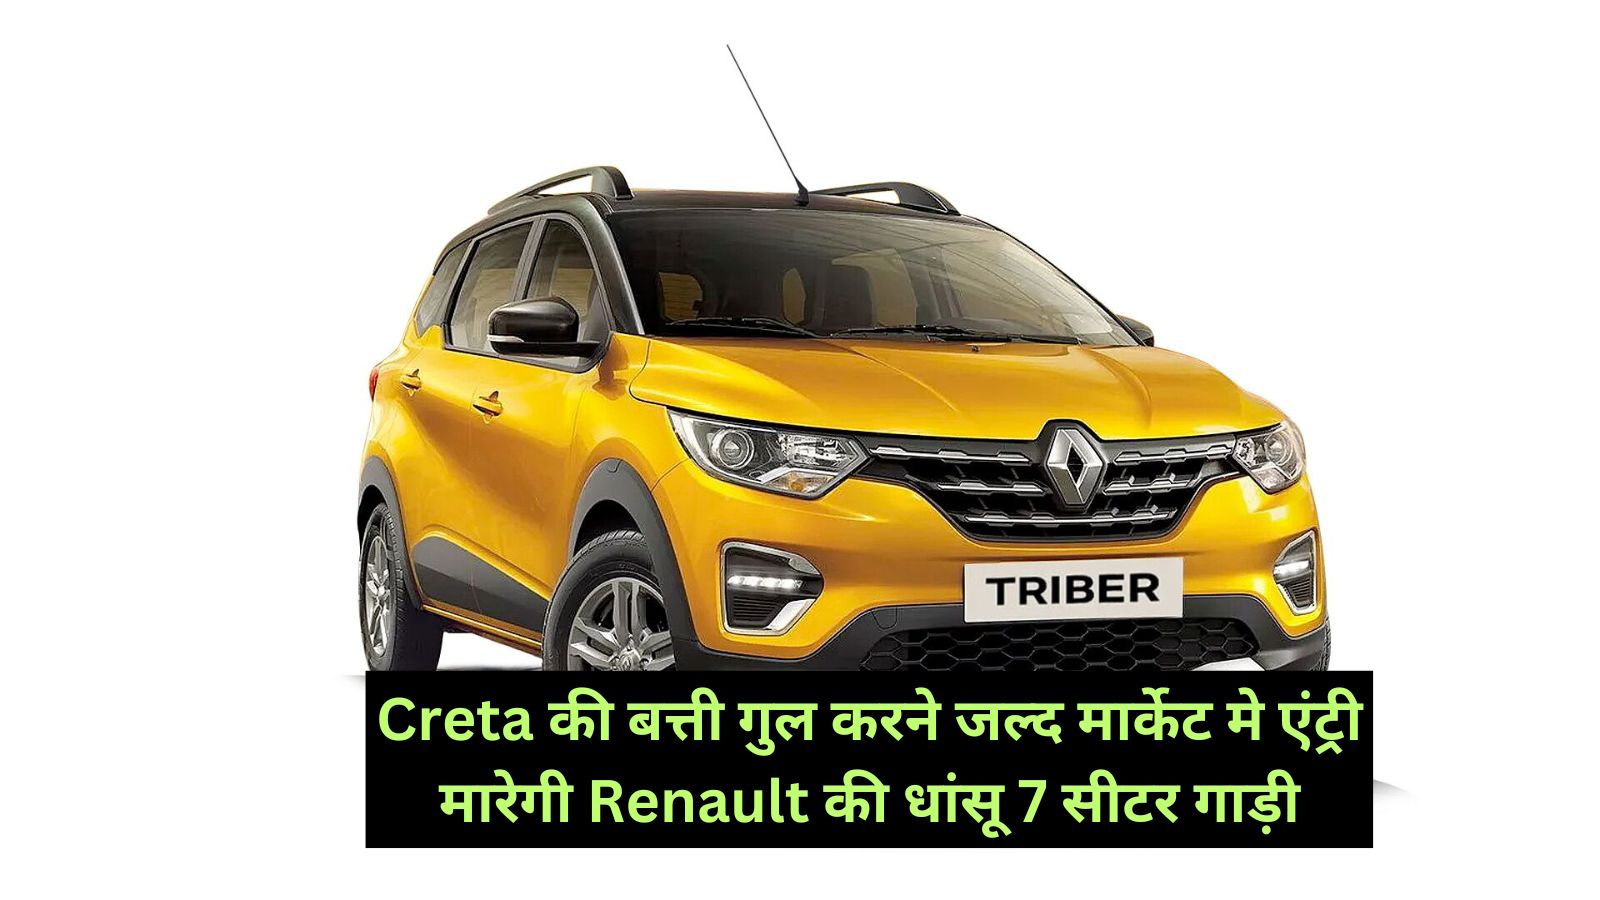 Renault Triber: Creta की बत्ती गुल करने जल्द मार्केट मे एंट्री मारेगी Renault की धांसू 7 सीटर गाड़ी,लग्जरी लुक के साथ साथ दमदार इंजन,